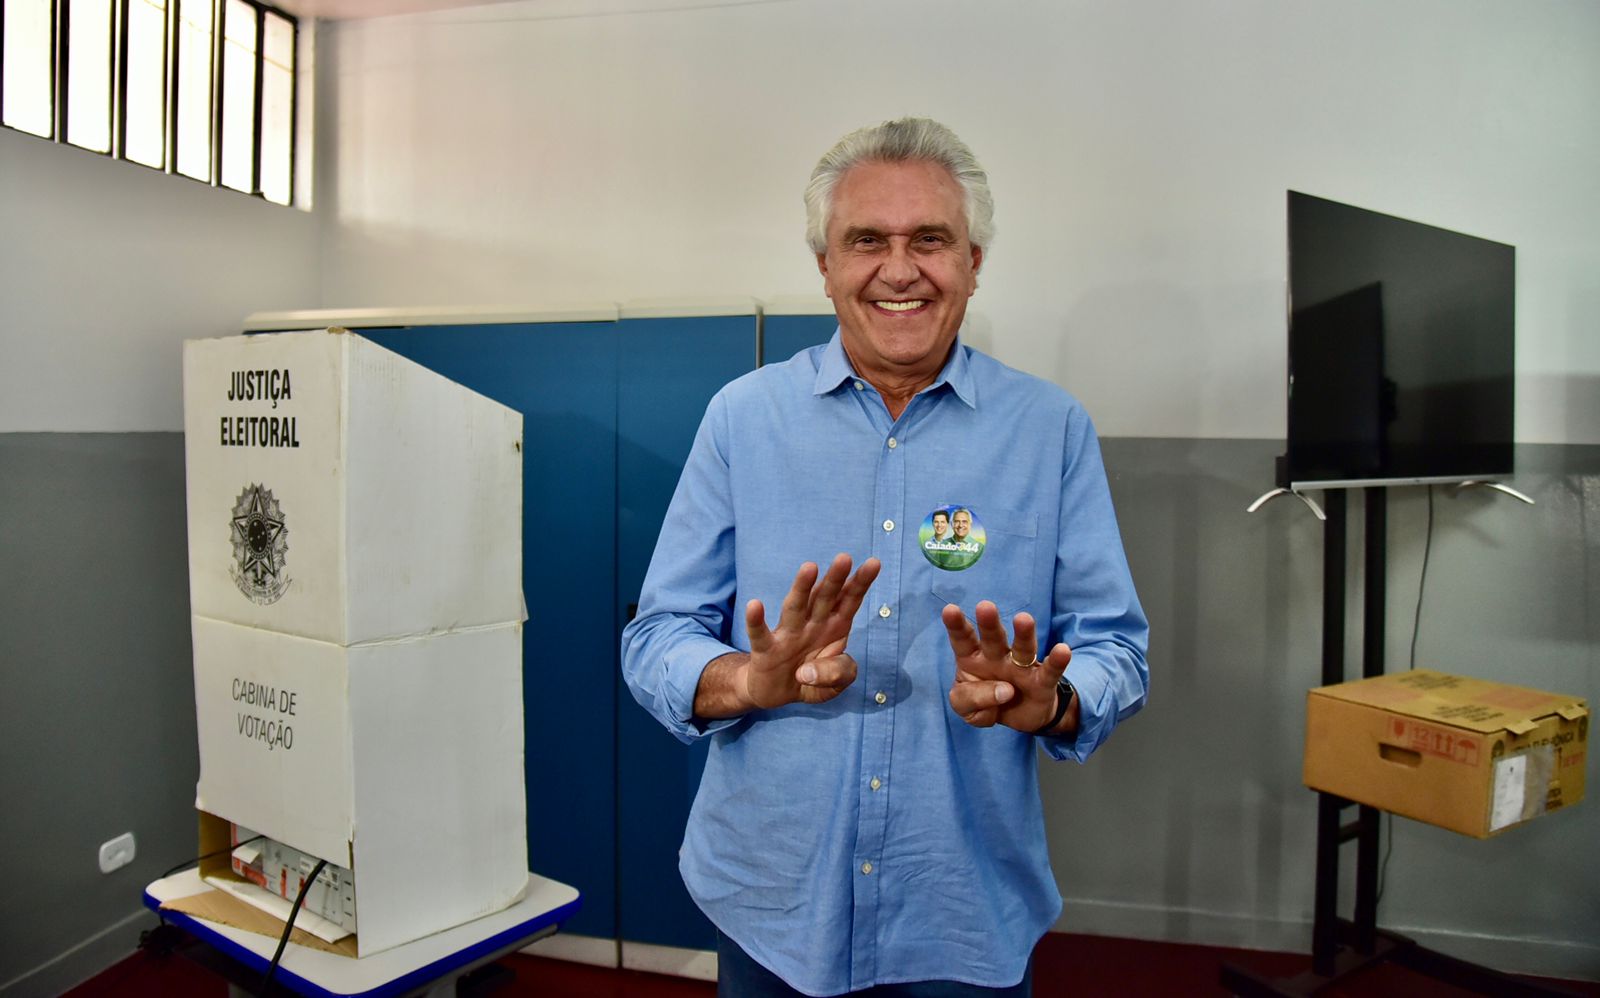 O Governador Ronaldo Caiado (União Brasil) votando em sua sessão eleitoral em Nova Crixas 